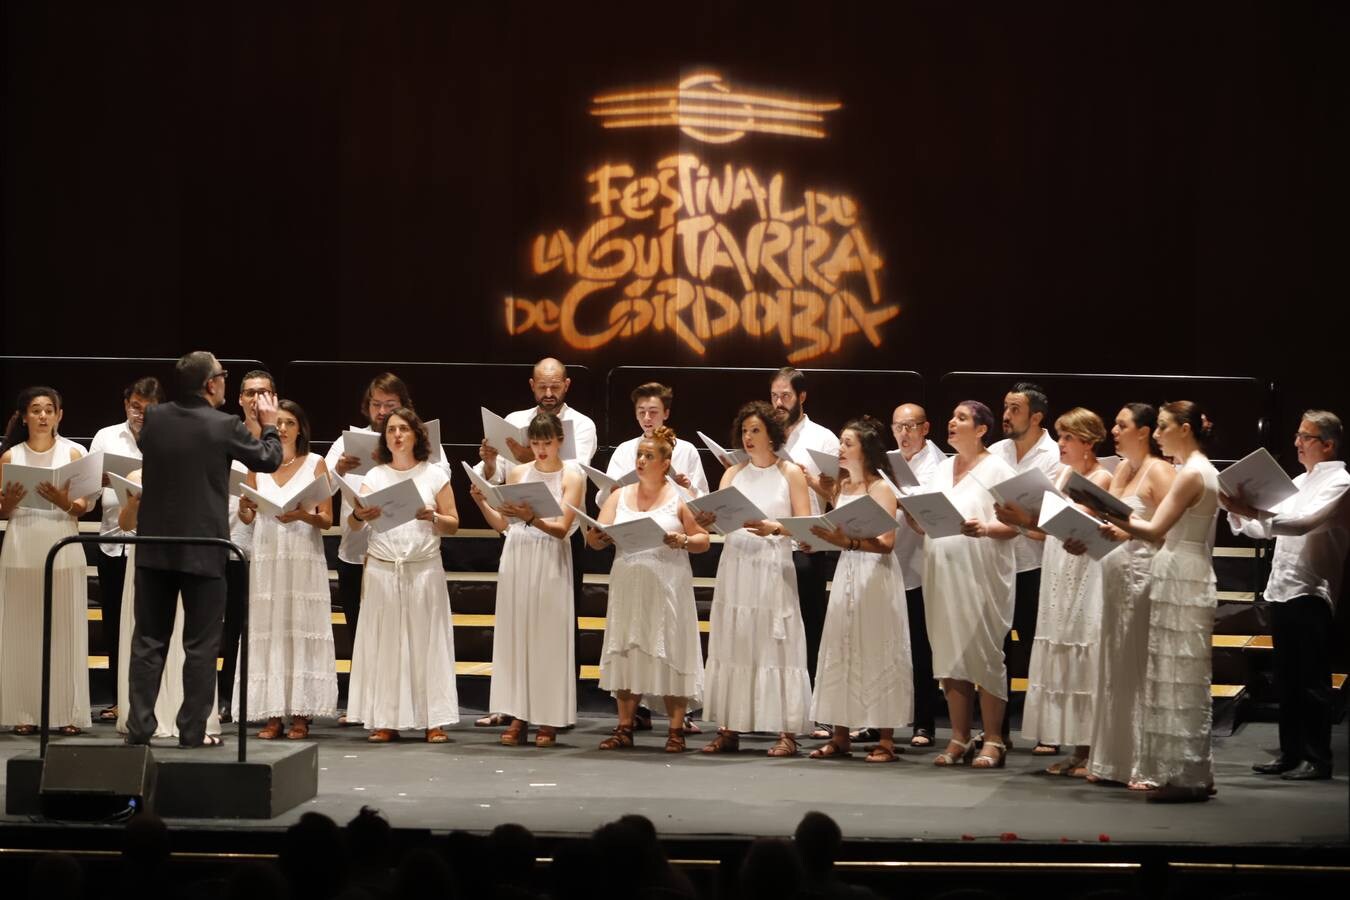 Festival de la Guitarra de Córdoba: el homenaje a Brouwer, en imágenes